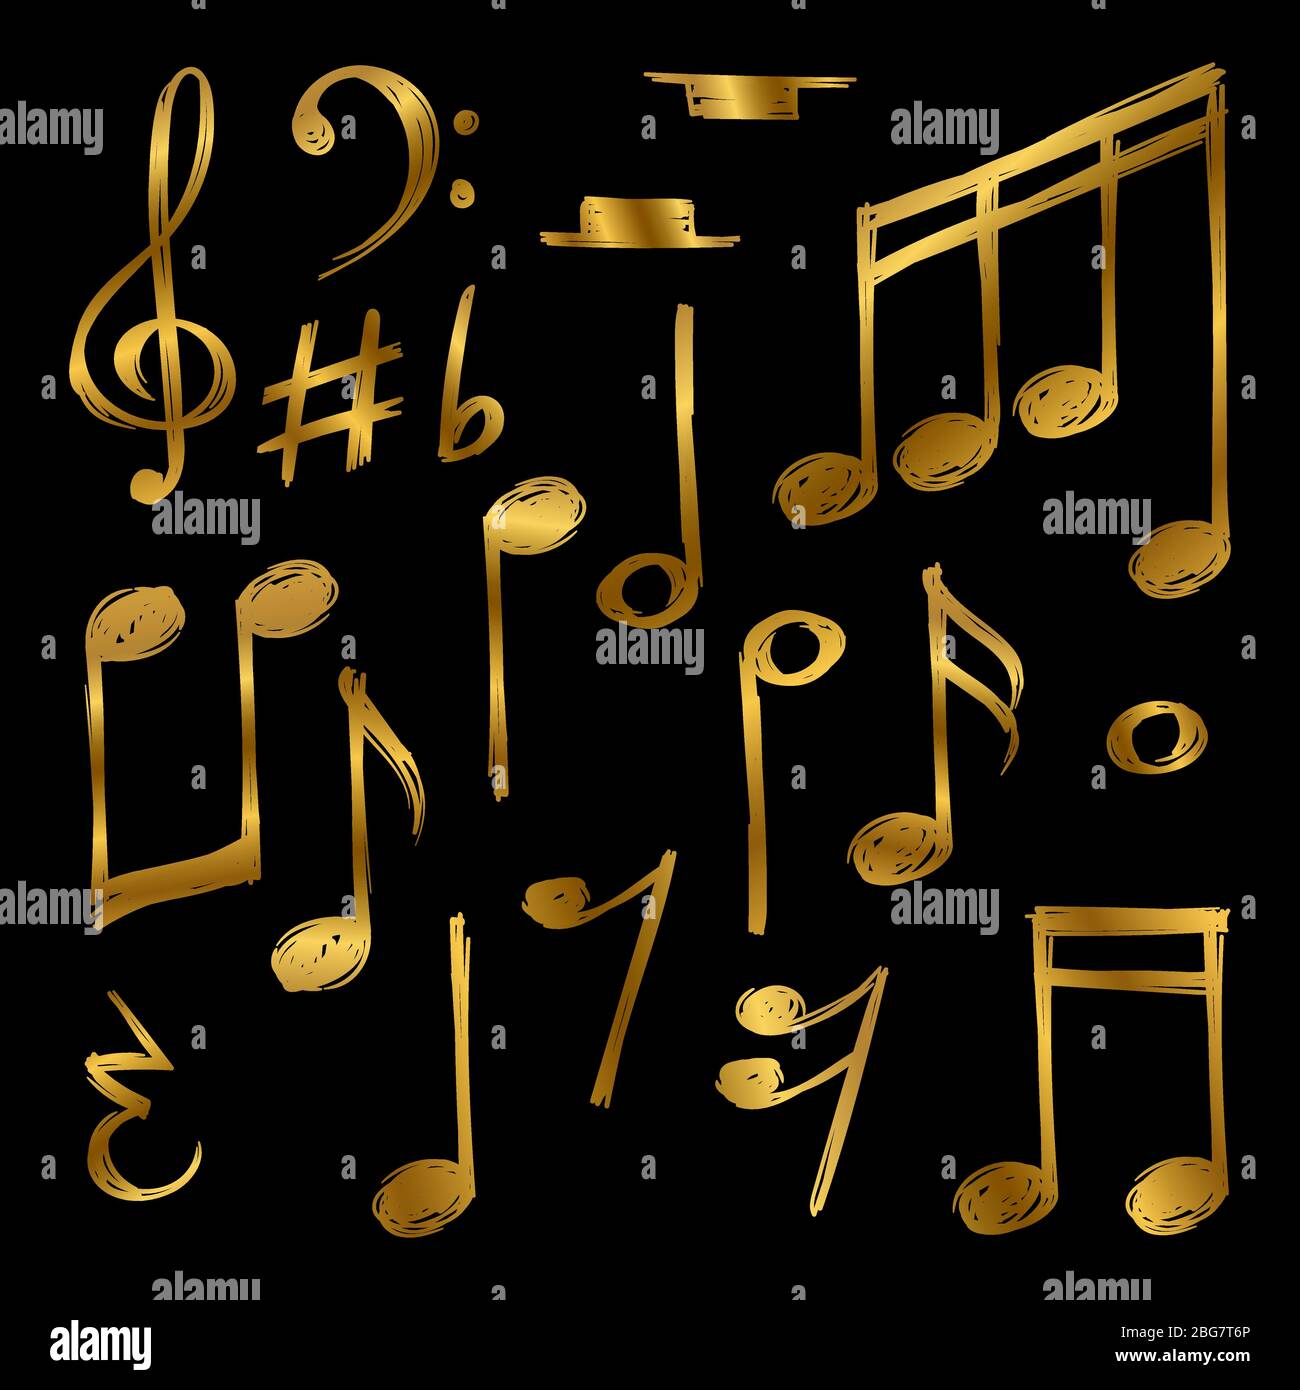 Goldene Noten und Zeichen des Sets isoliert auf schwarzem Hintergrund. Vektorgrafik Stock Vektor